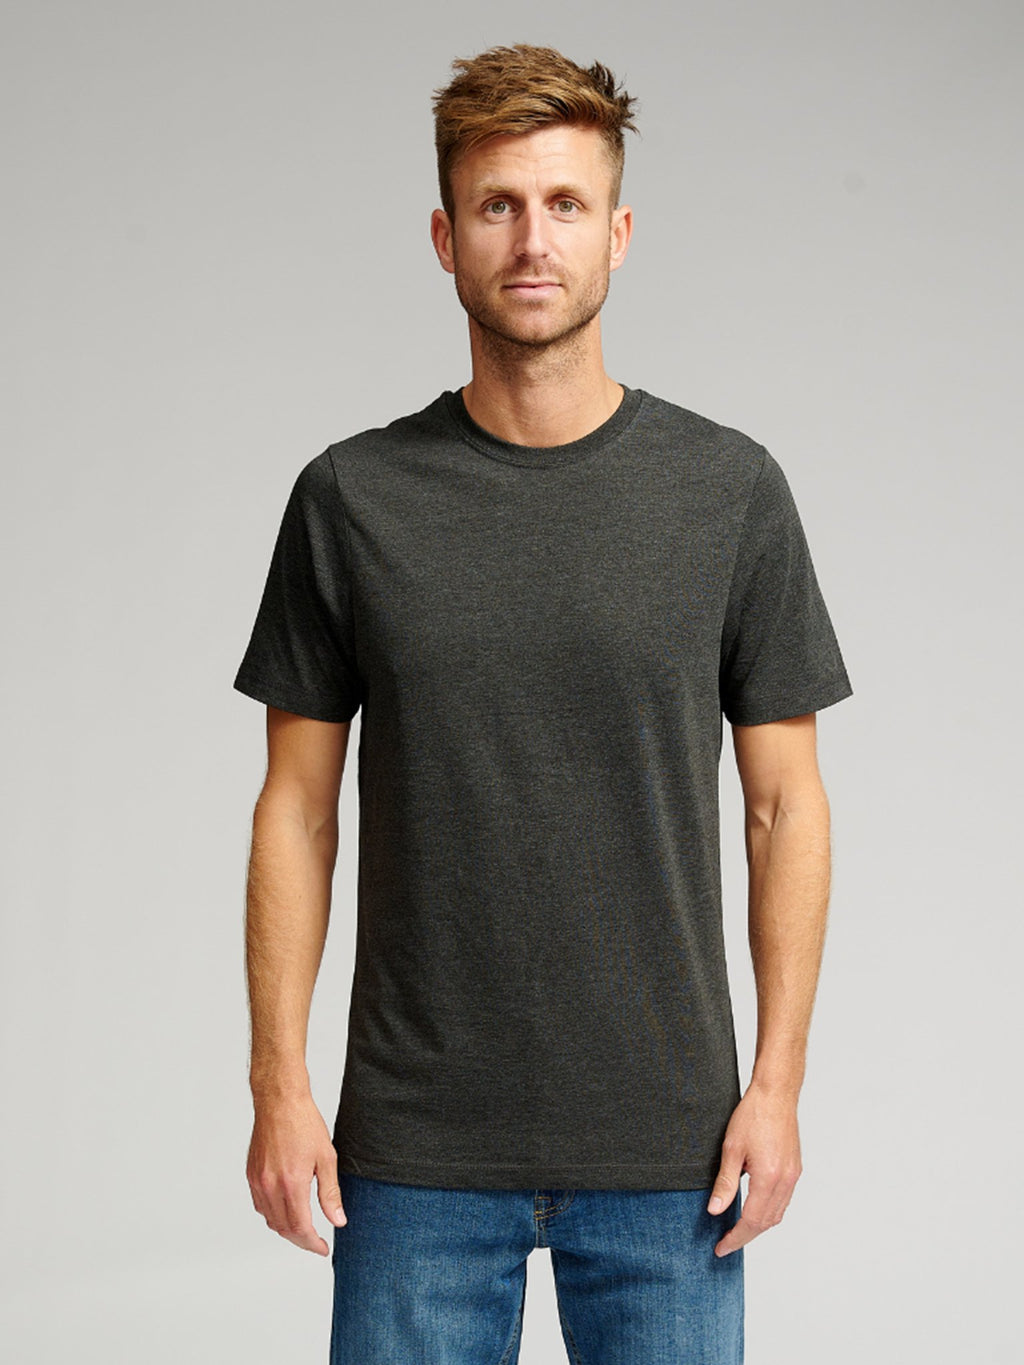 T -shirt di base organica - grigio scuro